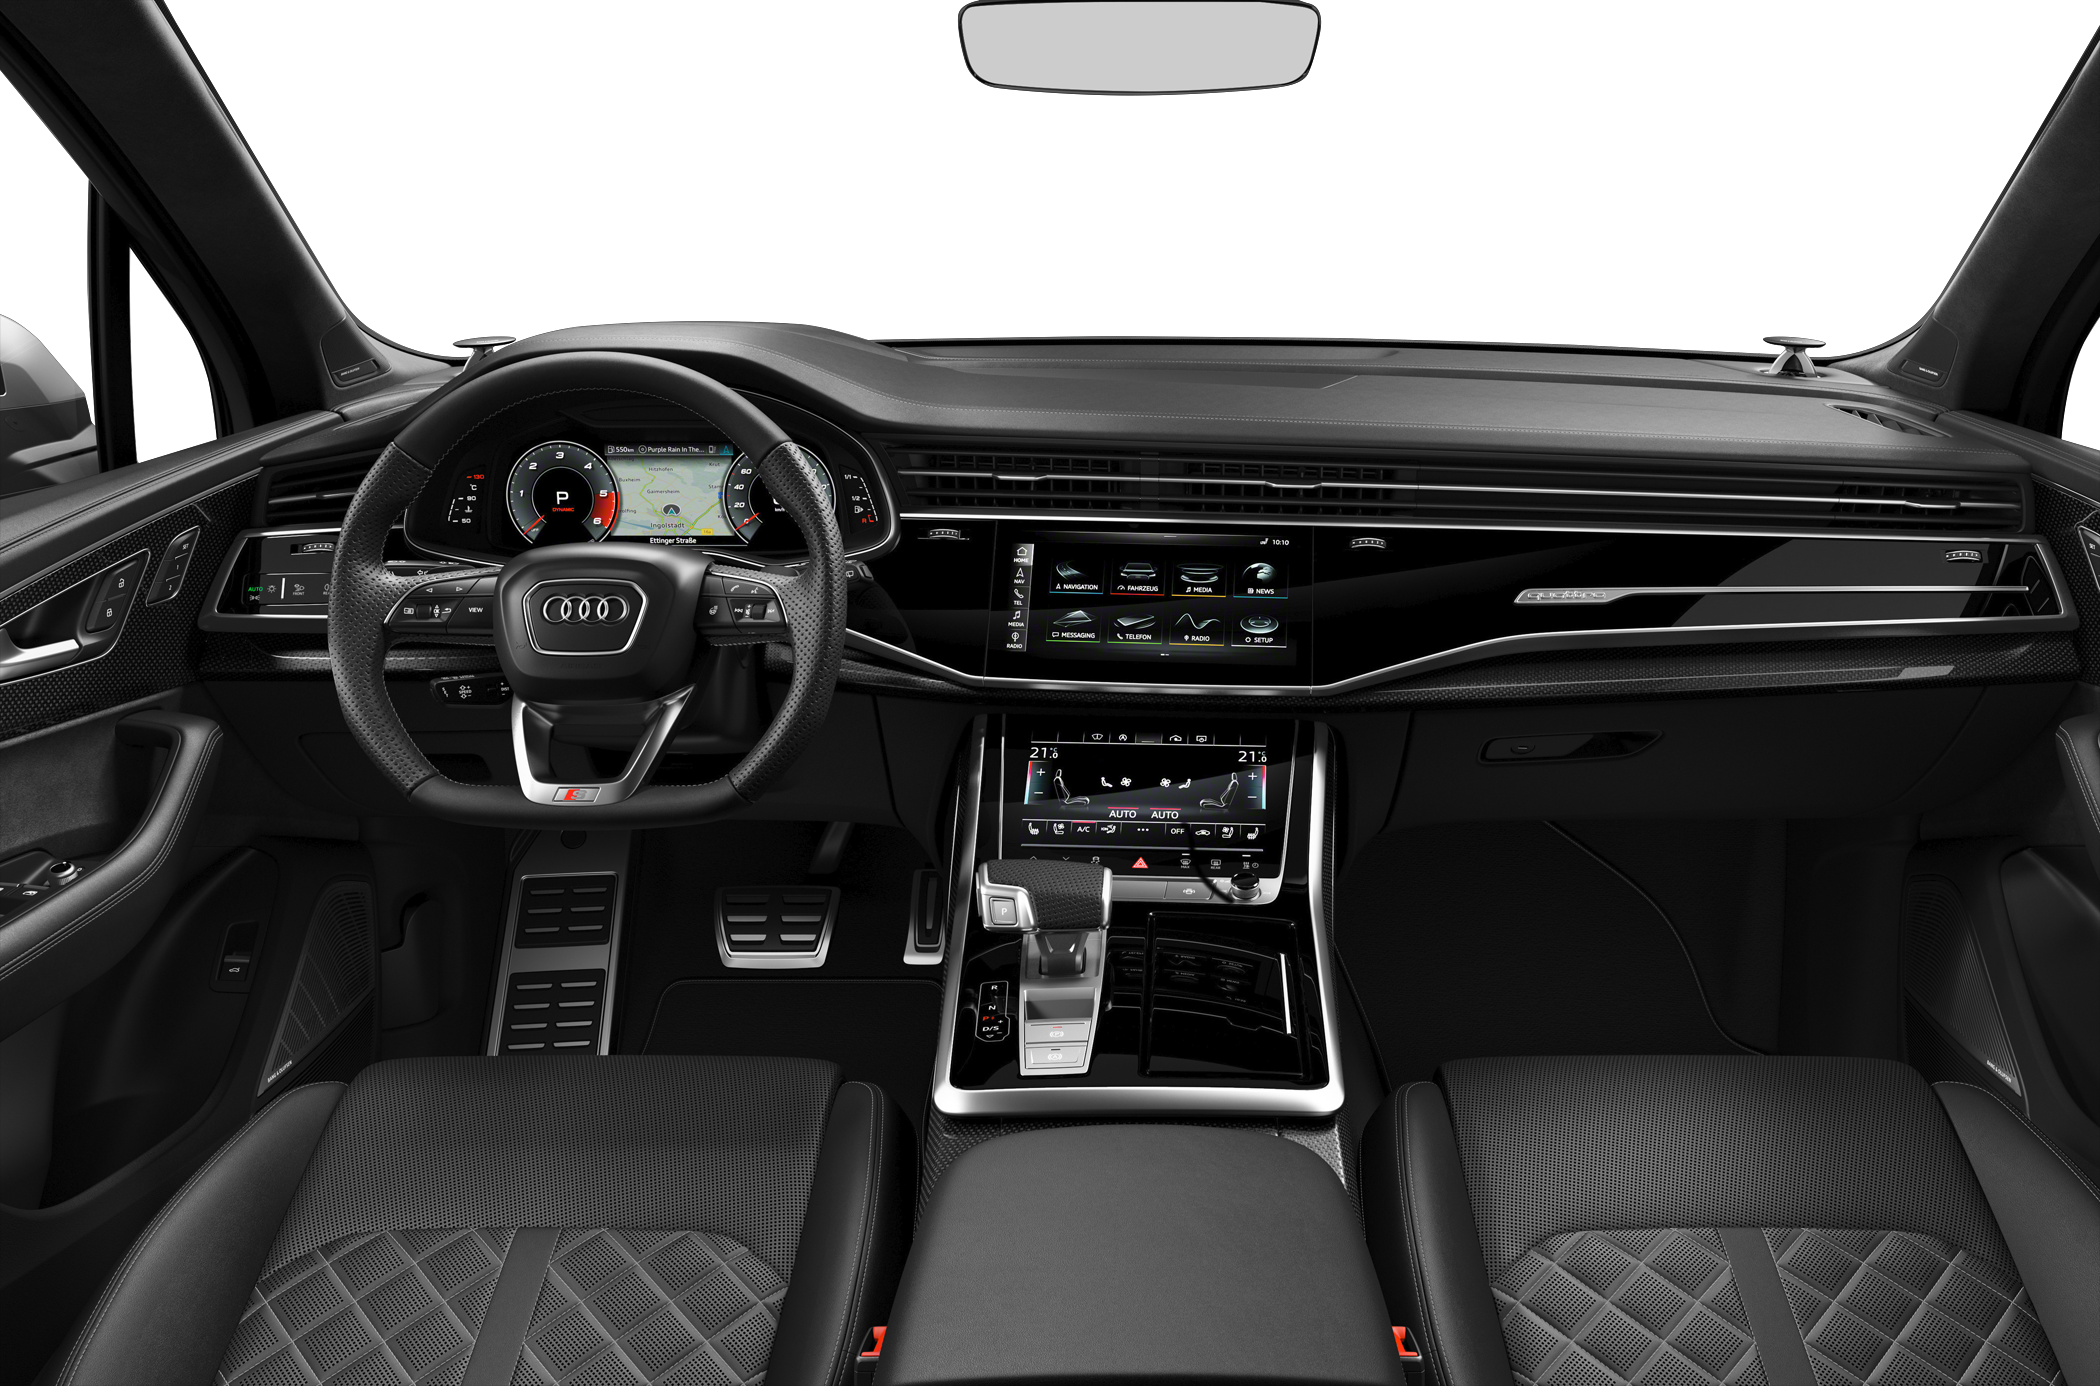 2020 Audi SQ7